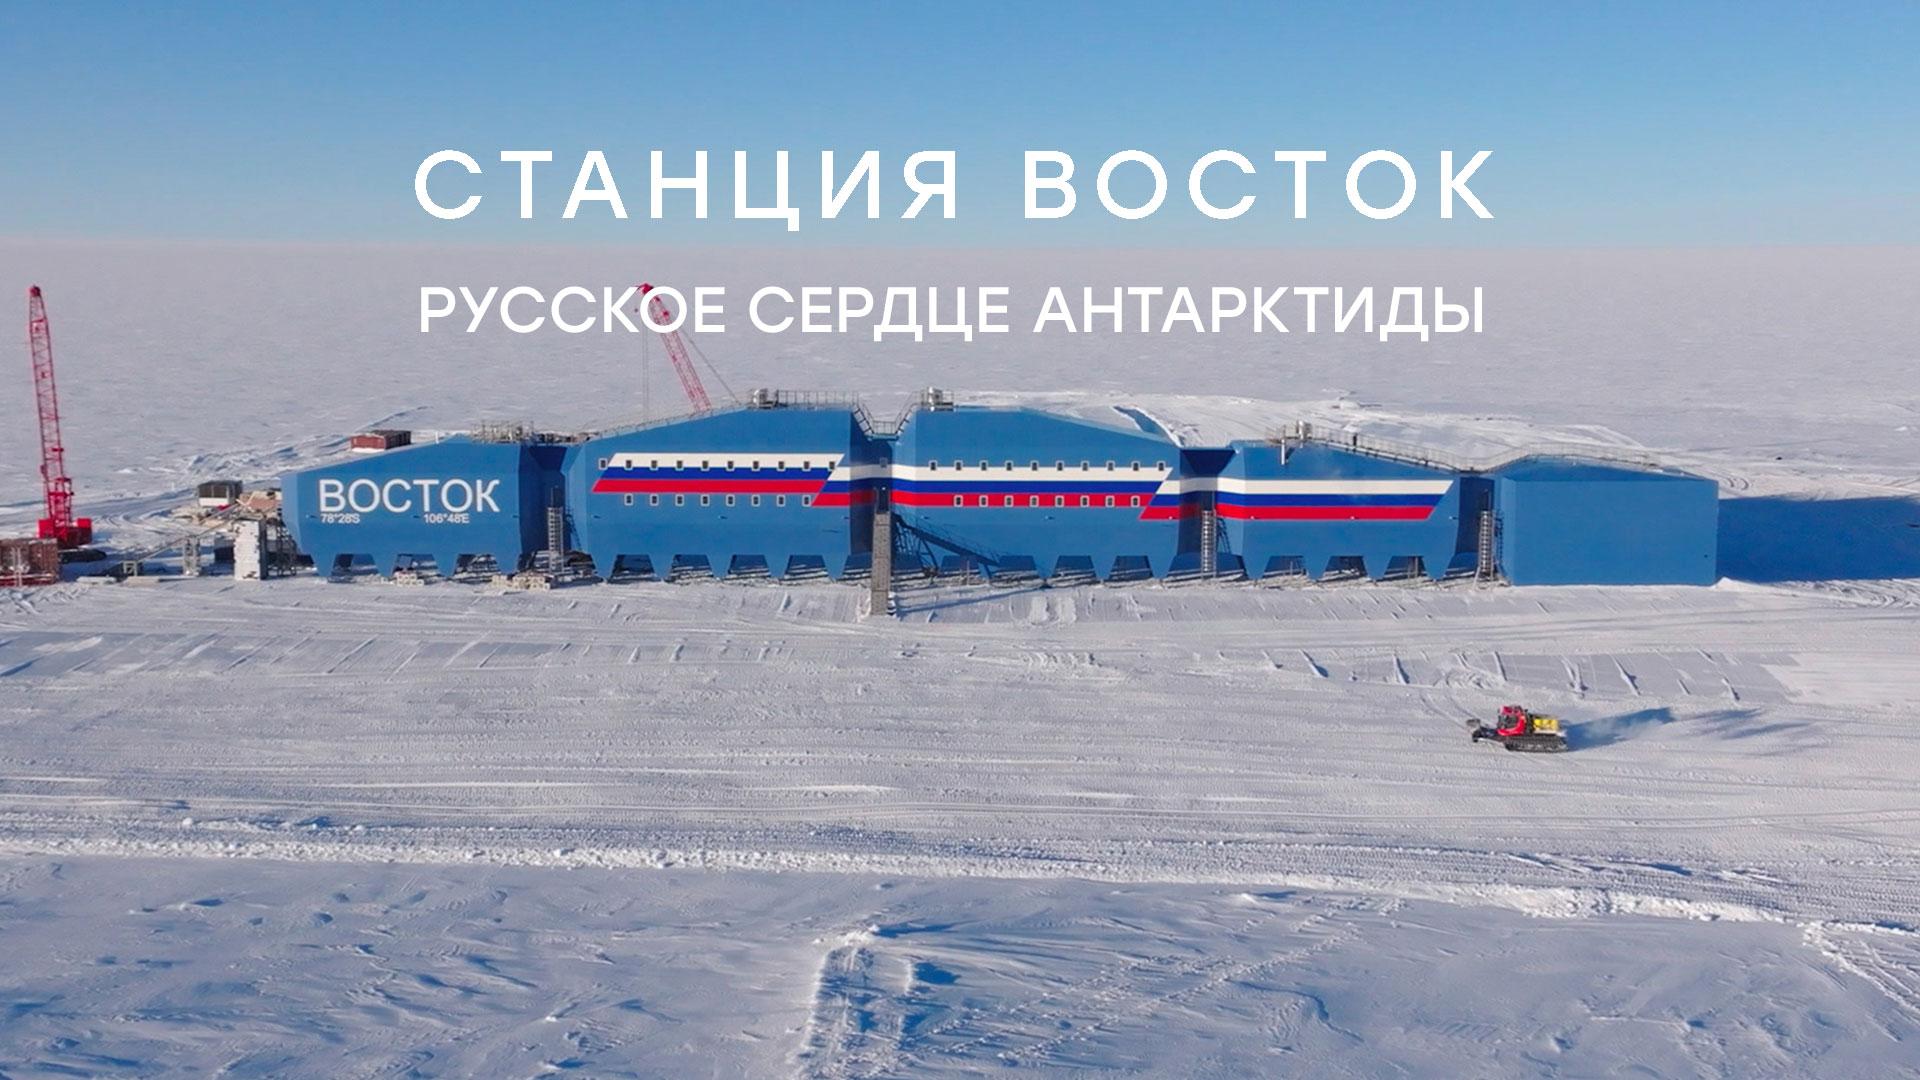 «Станция Восток. Русское сердце Антарктиды». Документальный фильм